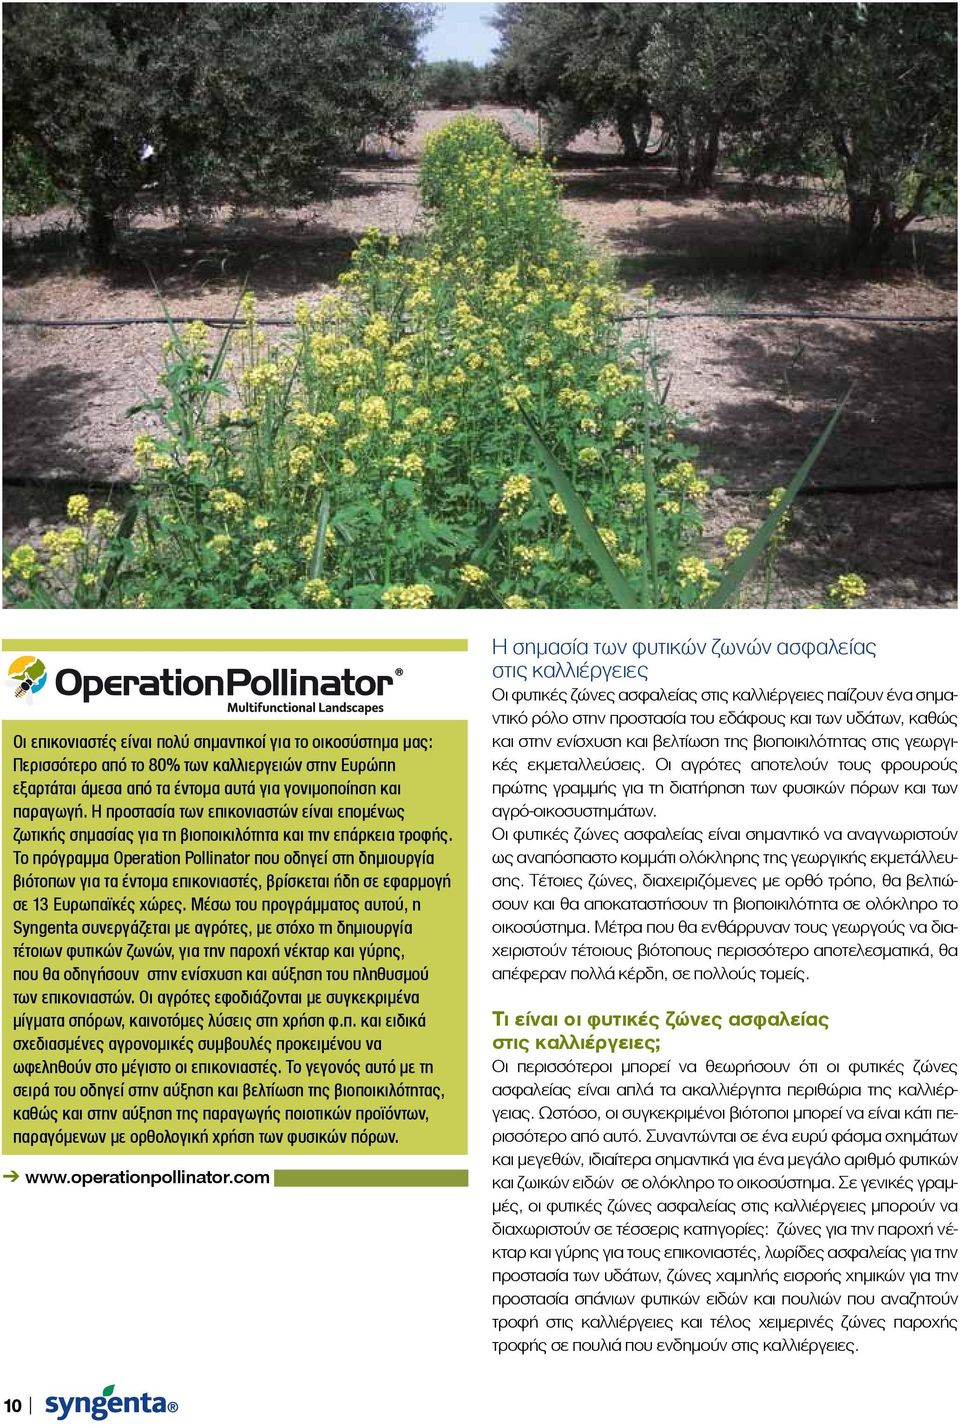 Το πρόγραμμα Operation Pollinator που οδηγεί στη δημιουργία βιότοπων για τα έντομα επικονιαστές, βρίσκεται ήδη σε εφαρμογή σε 13 Ευρωπαϊκές χώρες.